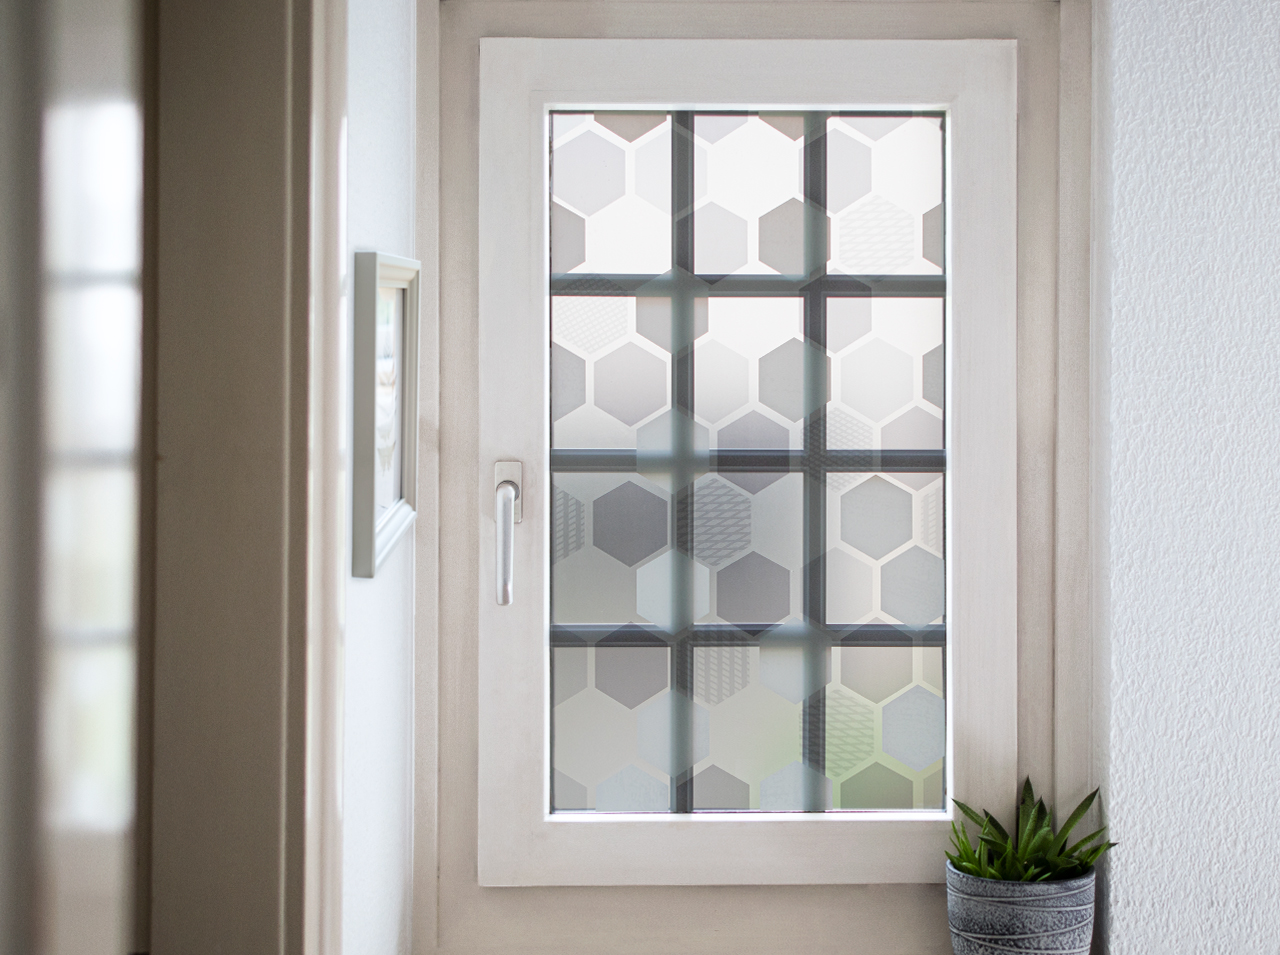 Fenêtre décorée d’un film opaque au motif nid d’abeille dans les coloris blanc, gris et menthe.